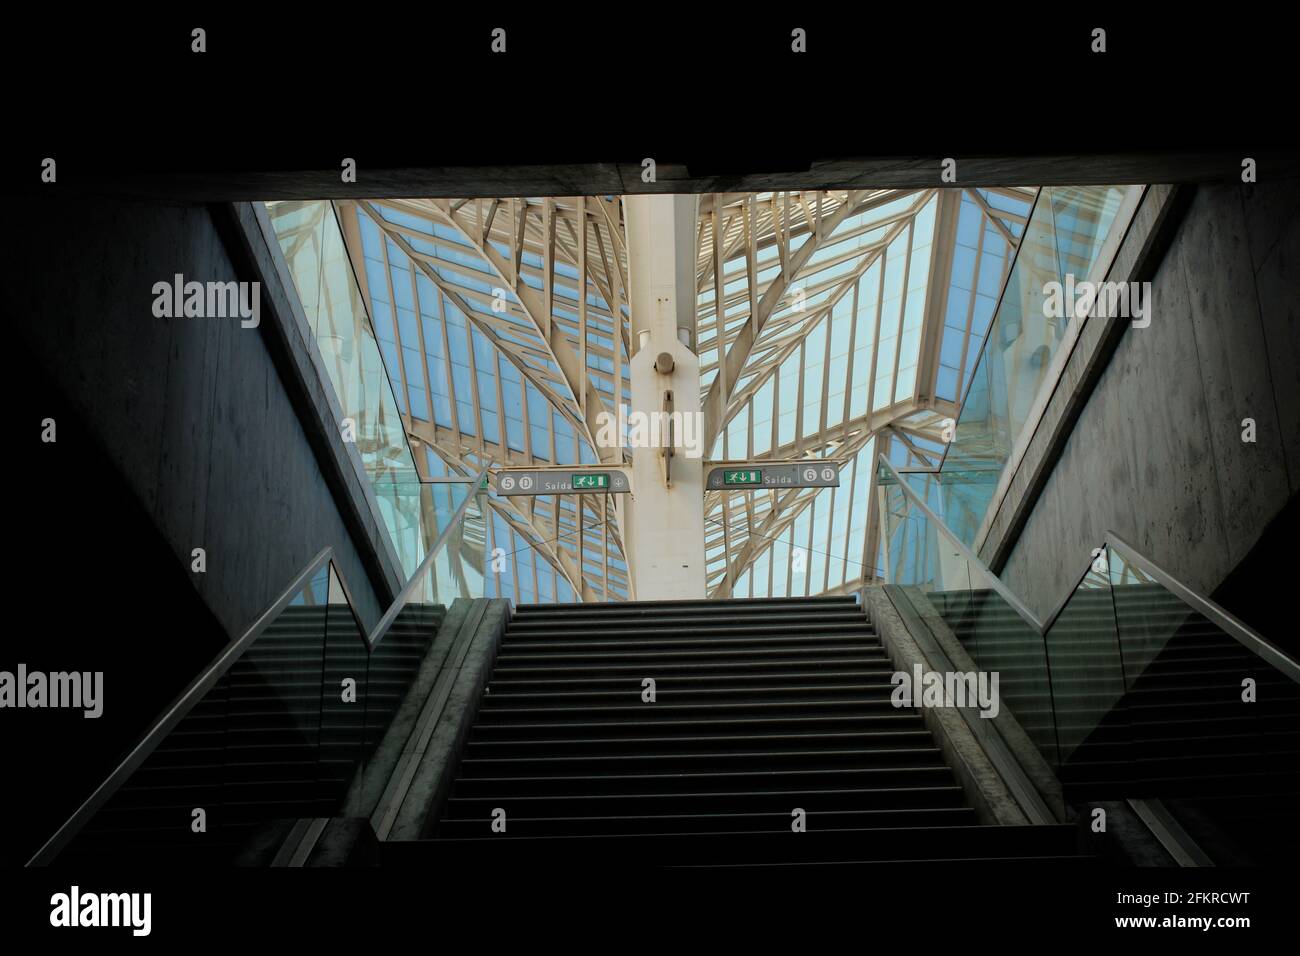 Vue depuis les escaliers de la gare de Lattice en métal blanc à Lisbonne, Portugal conçu par Santiago Calatrava Banque D'Images